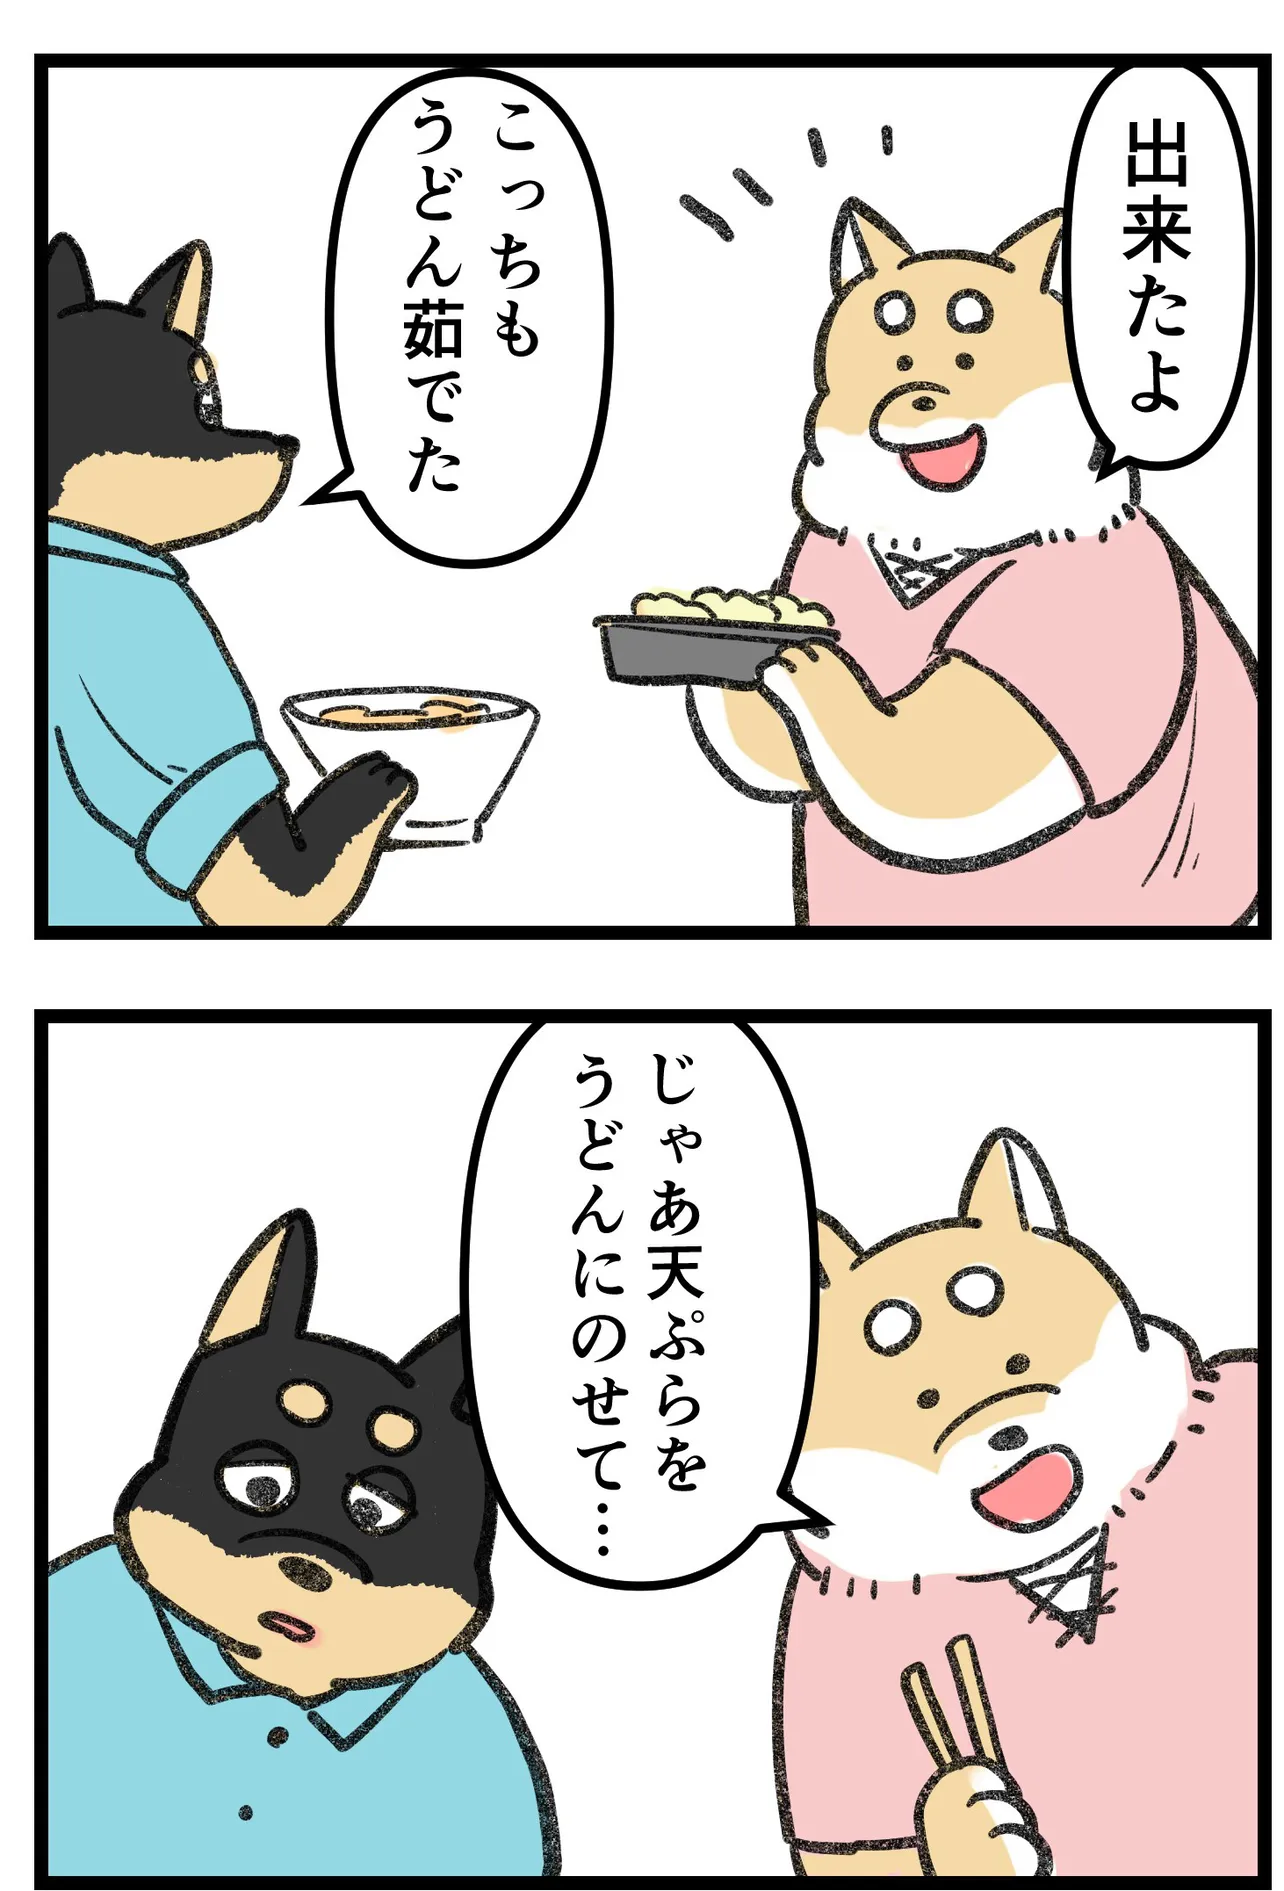 『柴犬二匹が山菜の天ぷらを作って食べる話』(9/16)